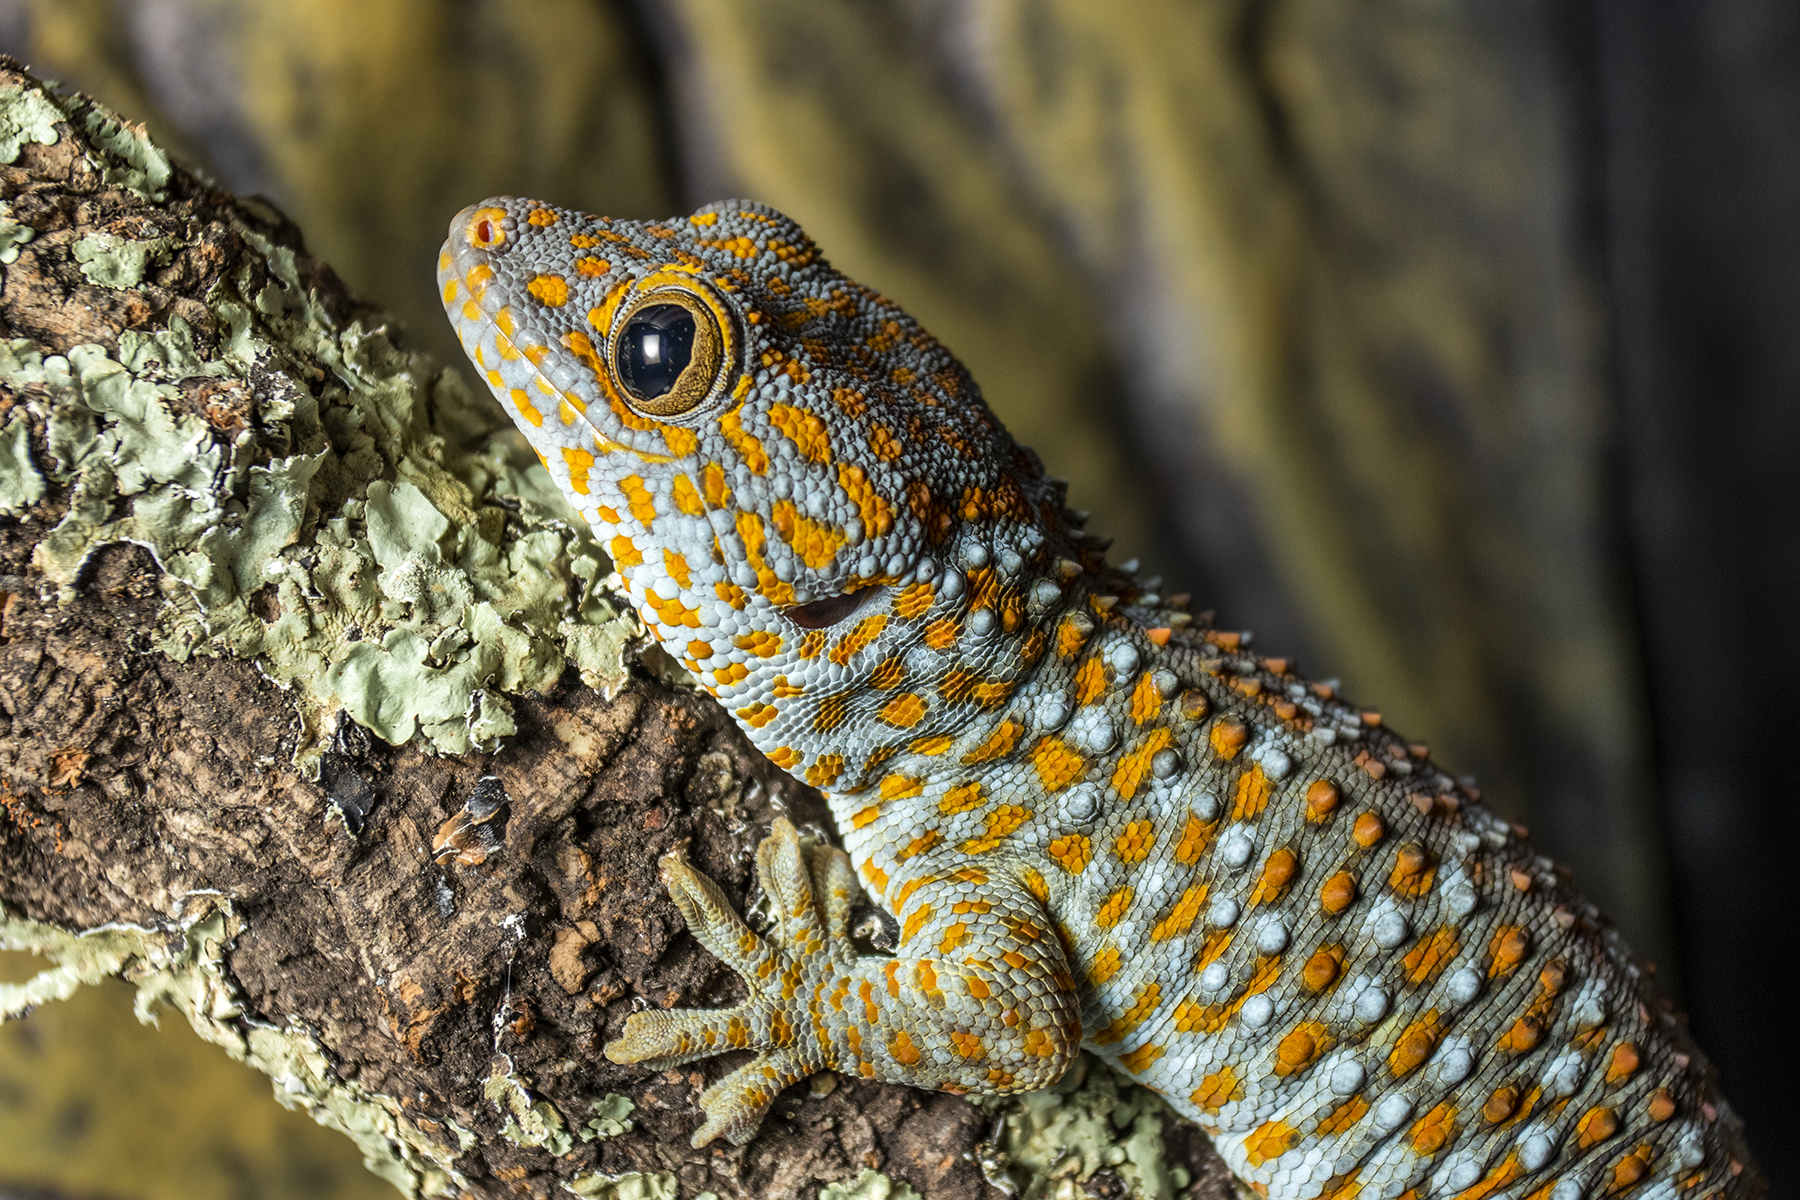 Objekt der Studie der Forschenden der Universität Bern waren Tokeh-Geckos (Gekko gecko).